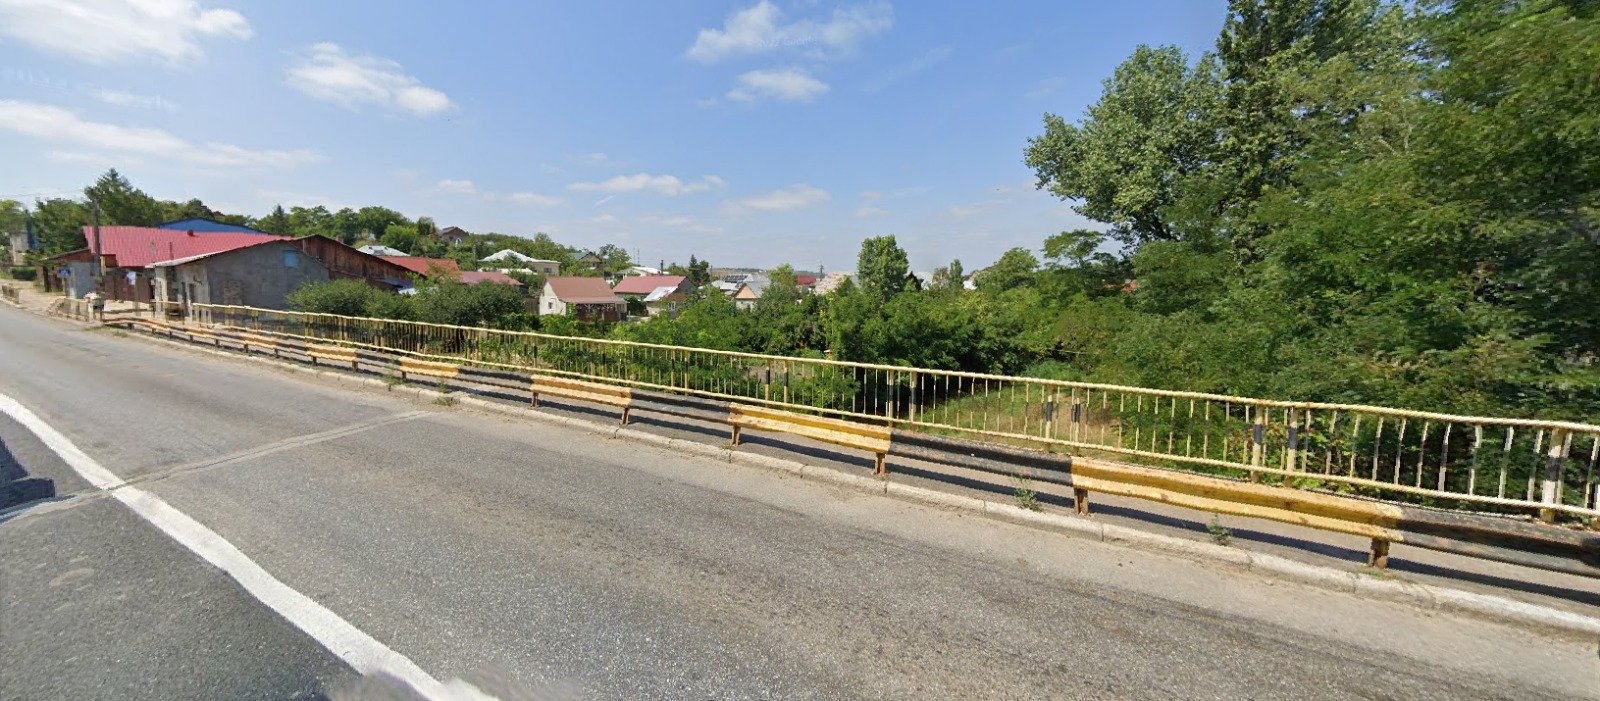  Restricţii de trafic pe podul peste Bahlui de pe DN 28, la intrarea în Podu Iloaiei